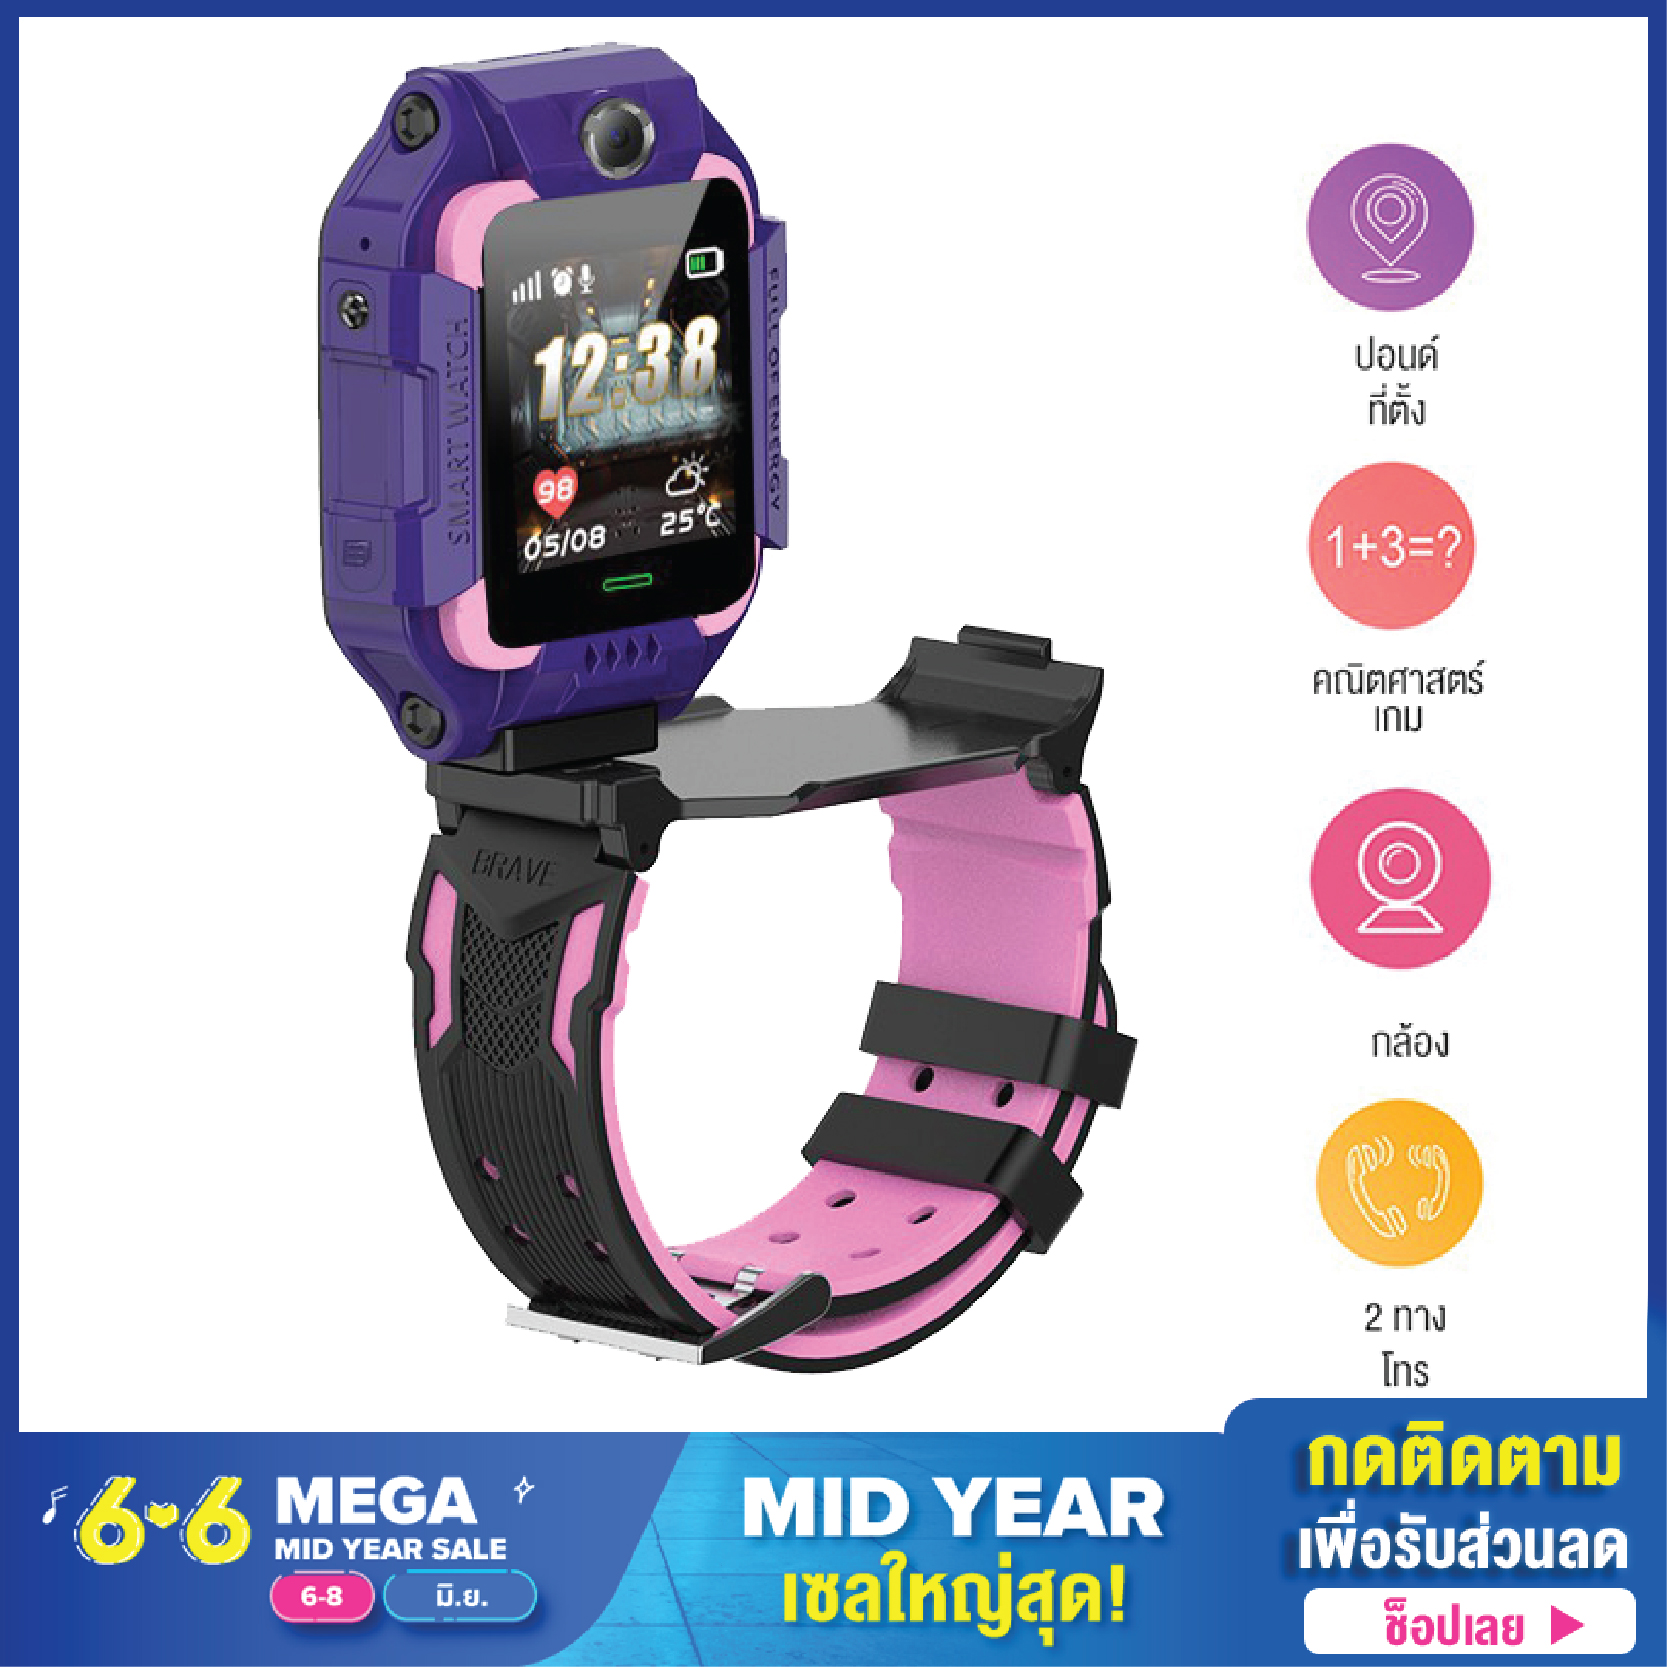 ส่งจากไทย Q88 นาฬิกา สมาทวอช z6z5 ไอโม่ imoรุ่นใหม่ นาฬิกาเด็ก Q19 Q88 ใส่ซิม โทร ได้ GPS ติดตามตำแหน่ง และไฟฉาย KID Smart Watch นาฬิกาป้องกันเด็กหาย